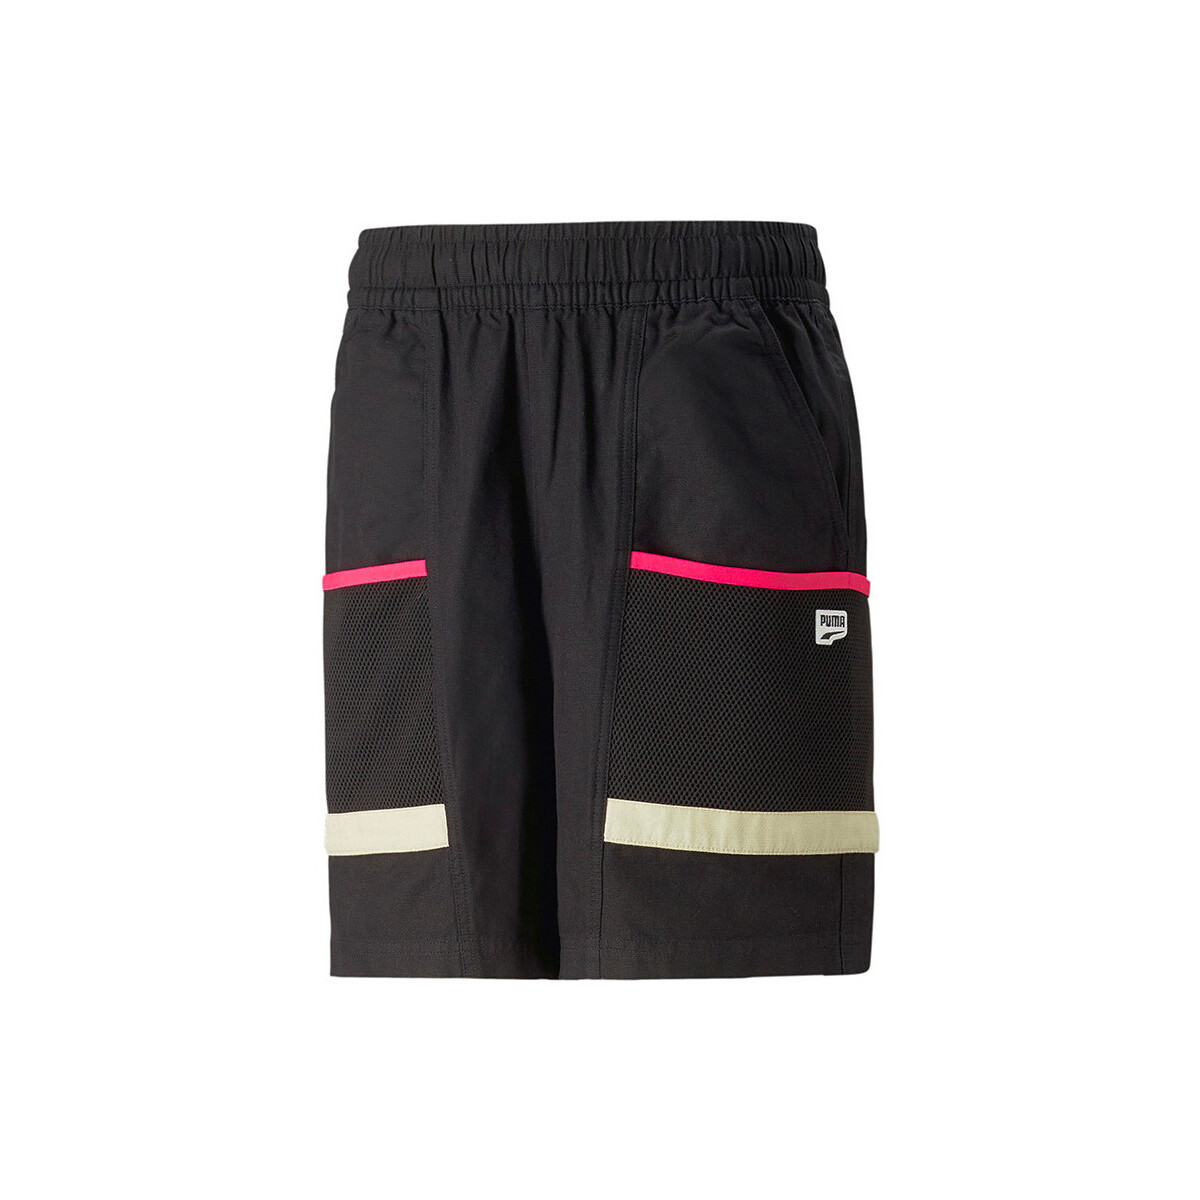 Vêtements Homme Shorts / Bermudas Puma Downtown Cargo Shorts / Noir Noir